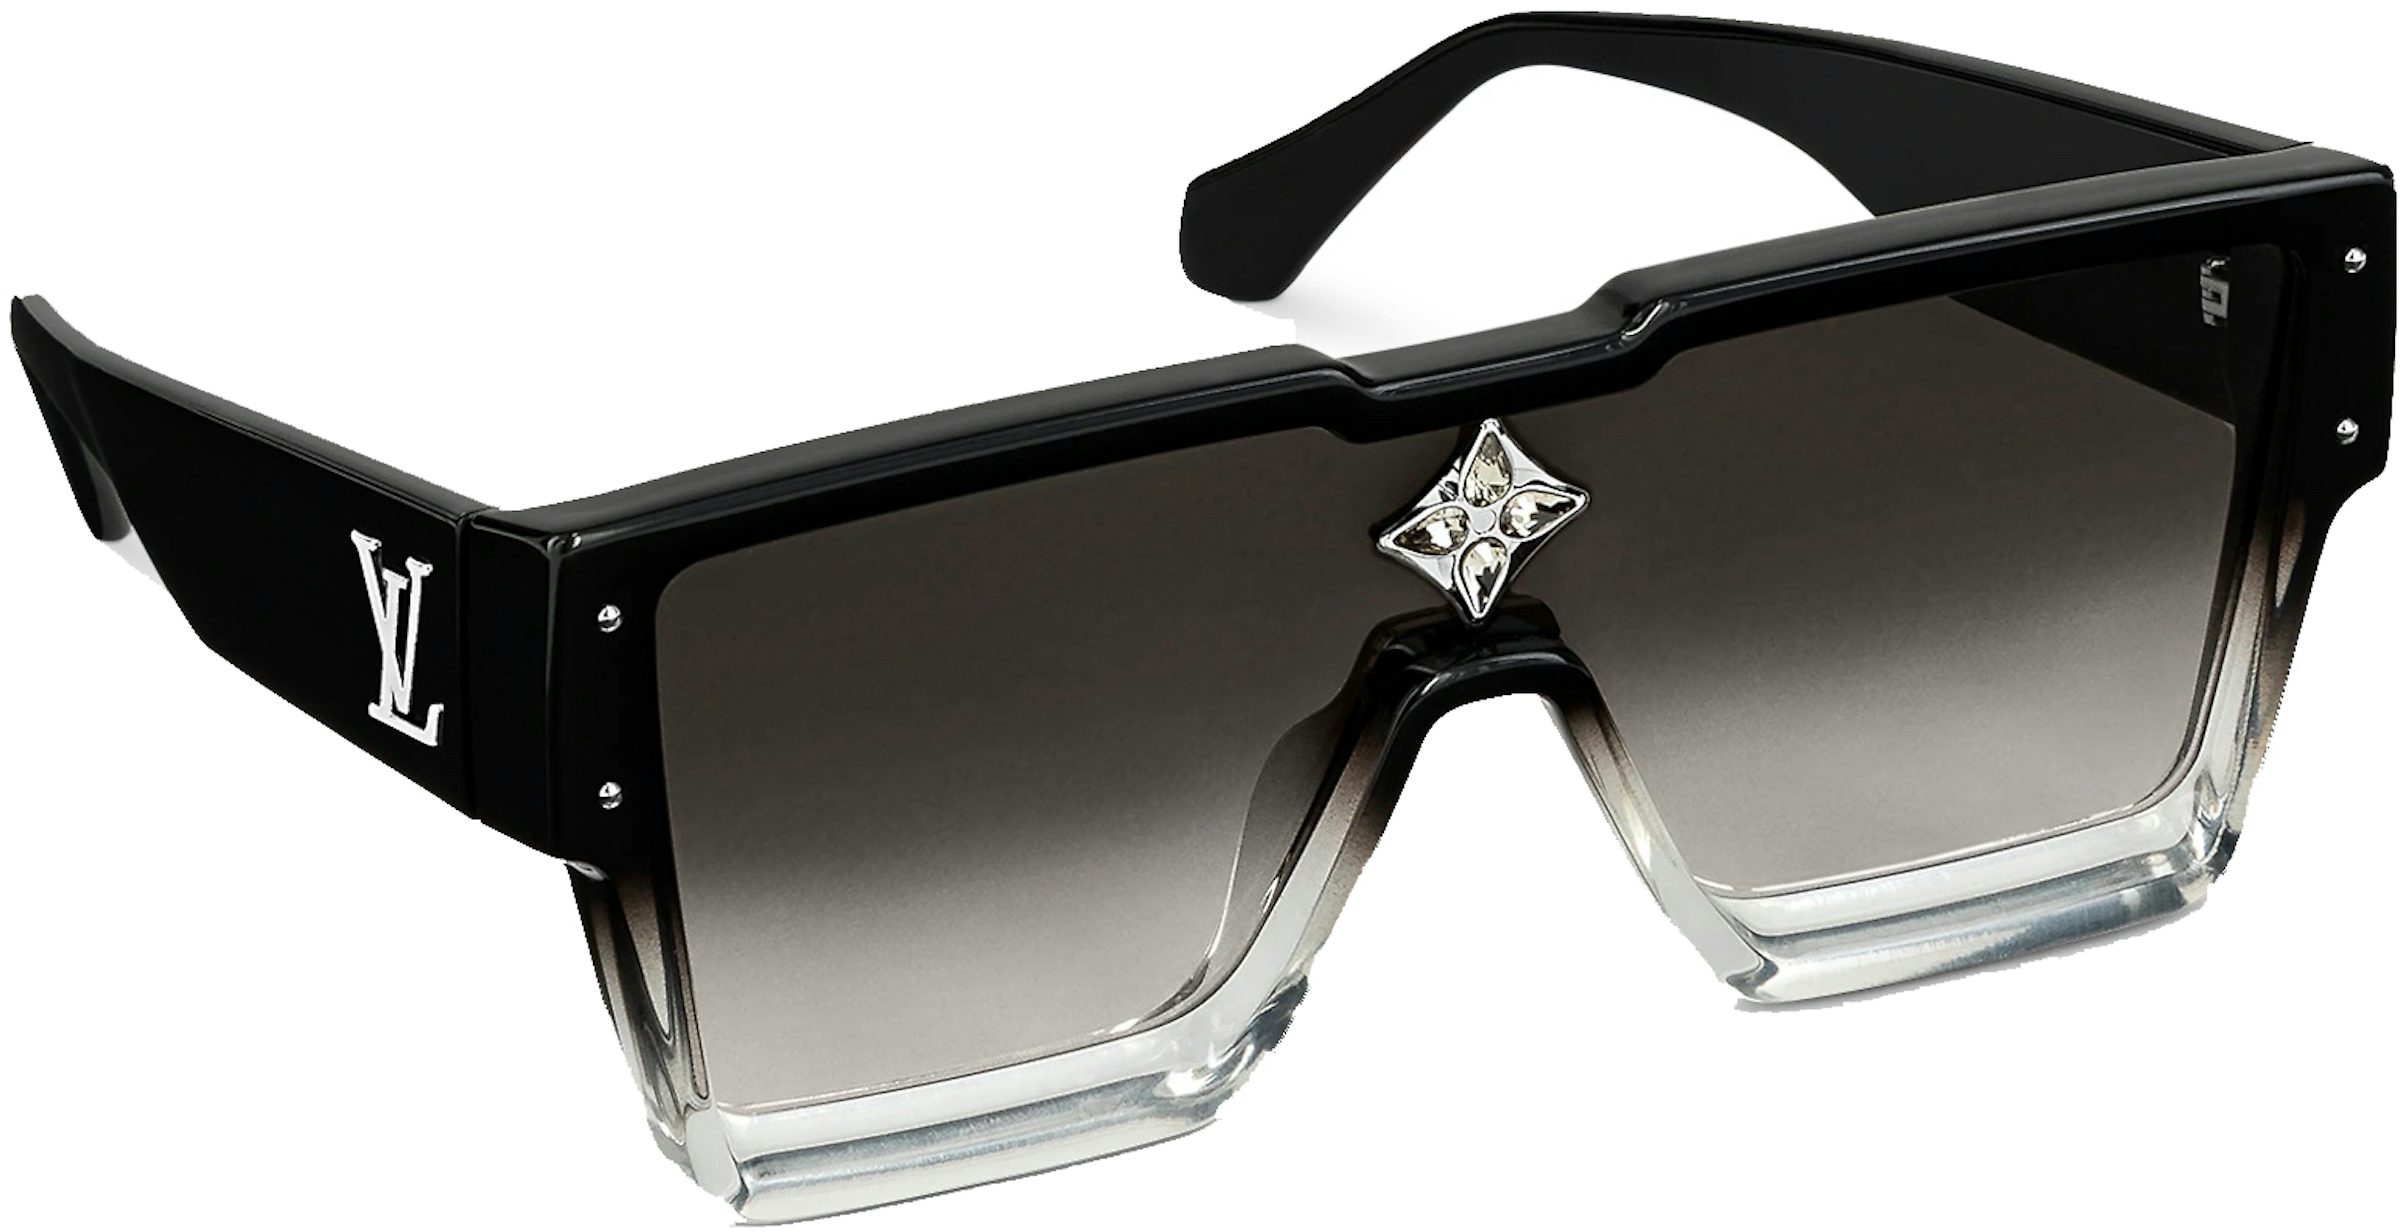 Louis Vuitton Men's Authenticated Sunglasses